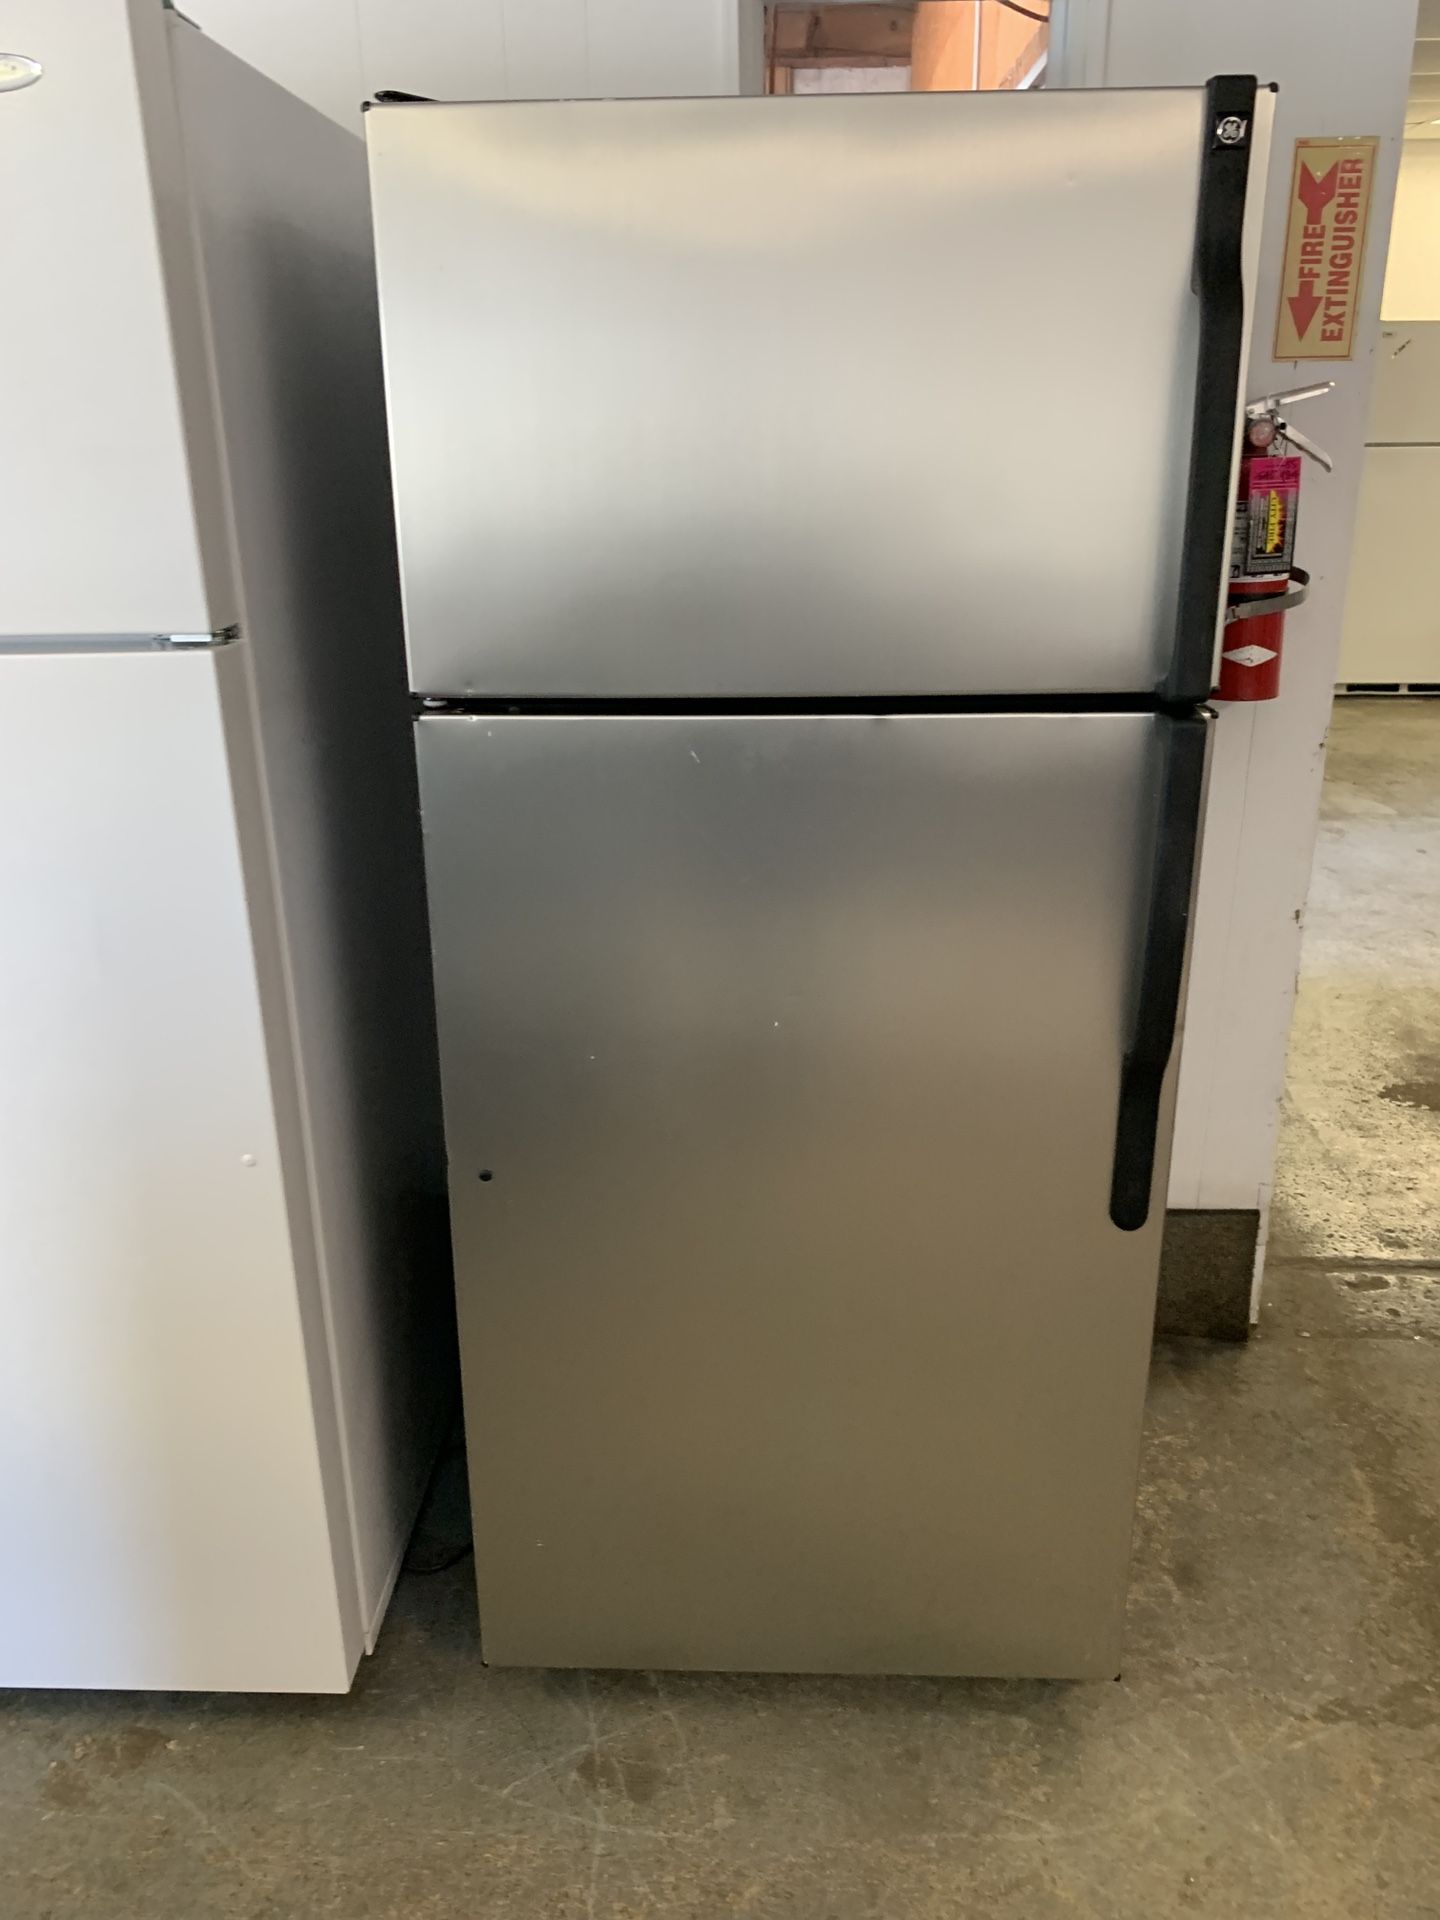 Top freezer refrigerator 28” wide no ice maker